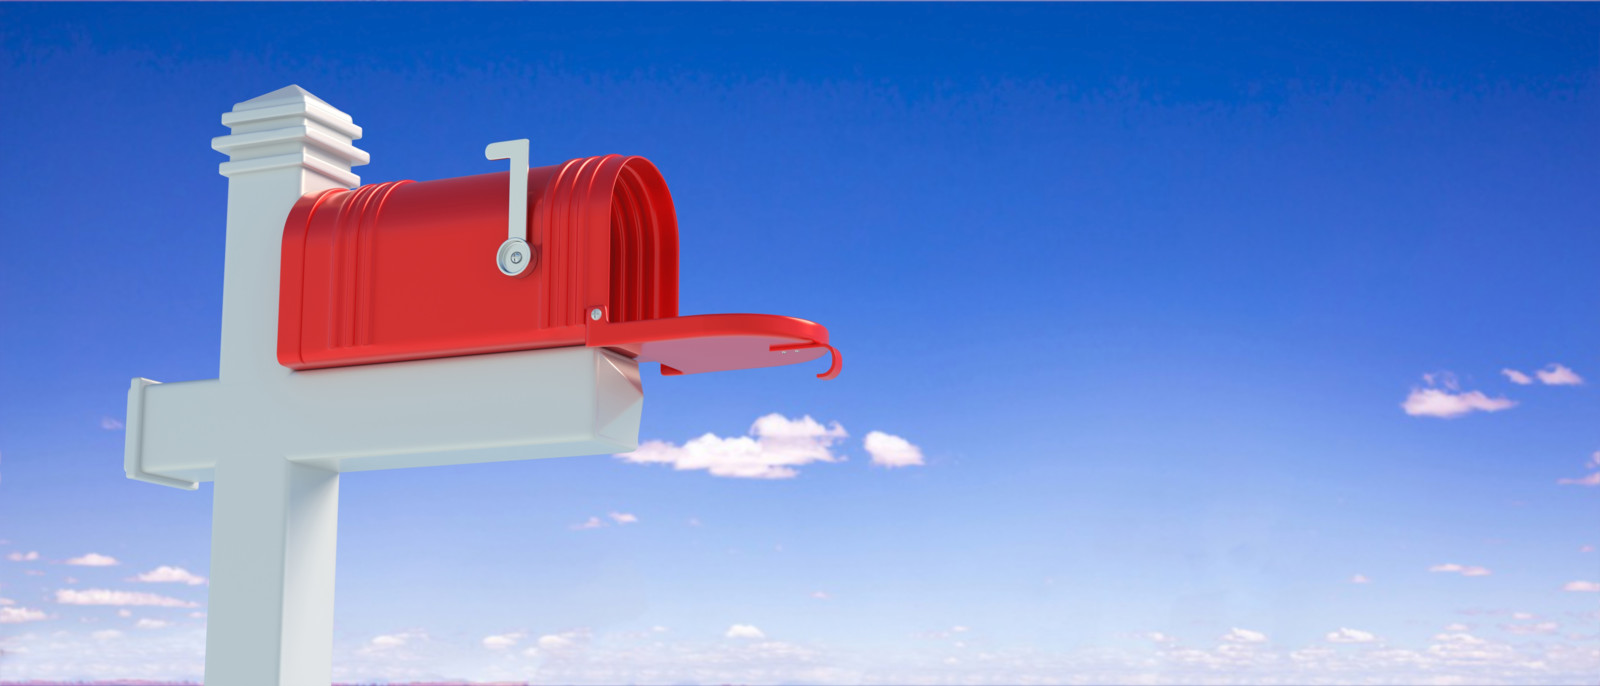 Wenn Ihr Briefkasten vergeblich auf Post von Bewerbern wartet, sollten Sie Ihren Stellenanzeigen ein Gesicht geben.